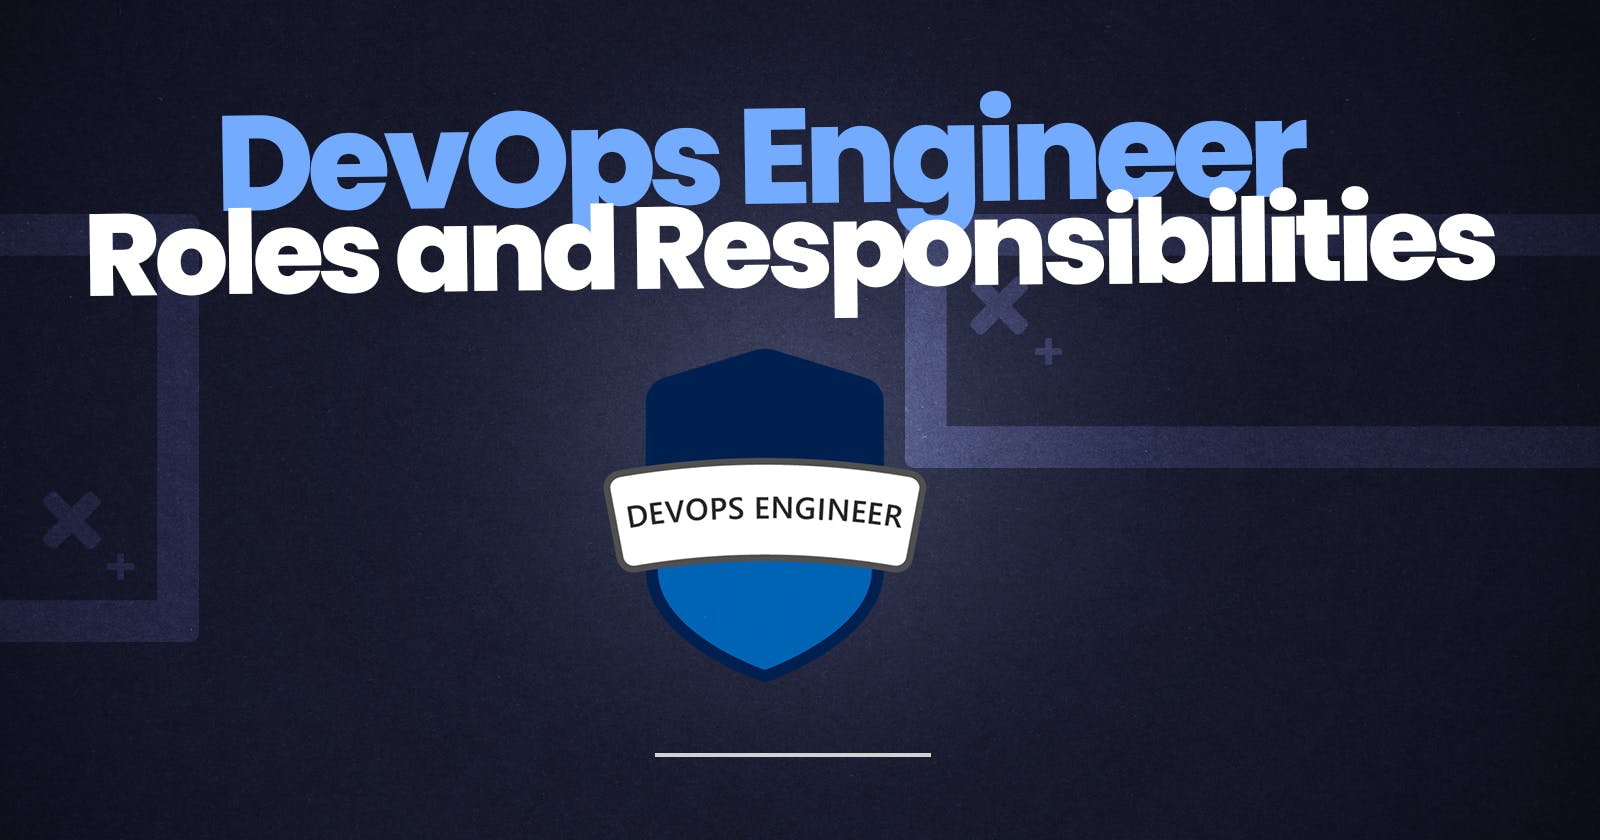 DevOps Engineer Roles and Responsibilities